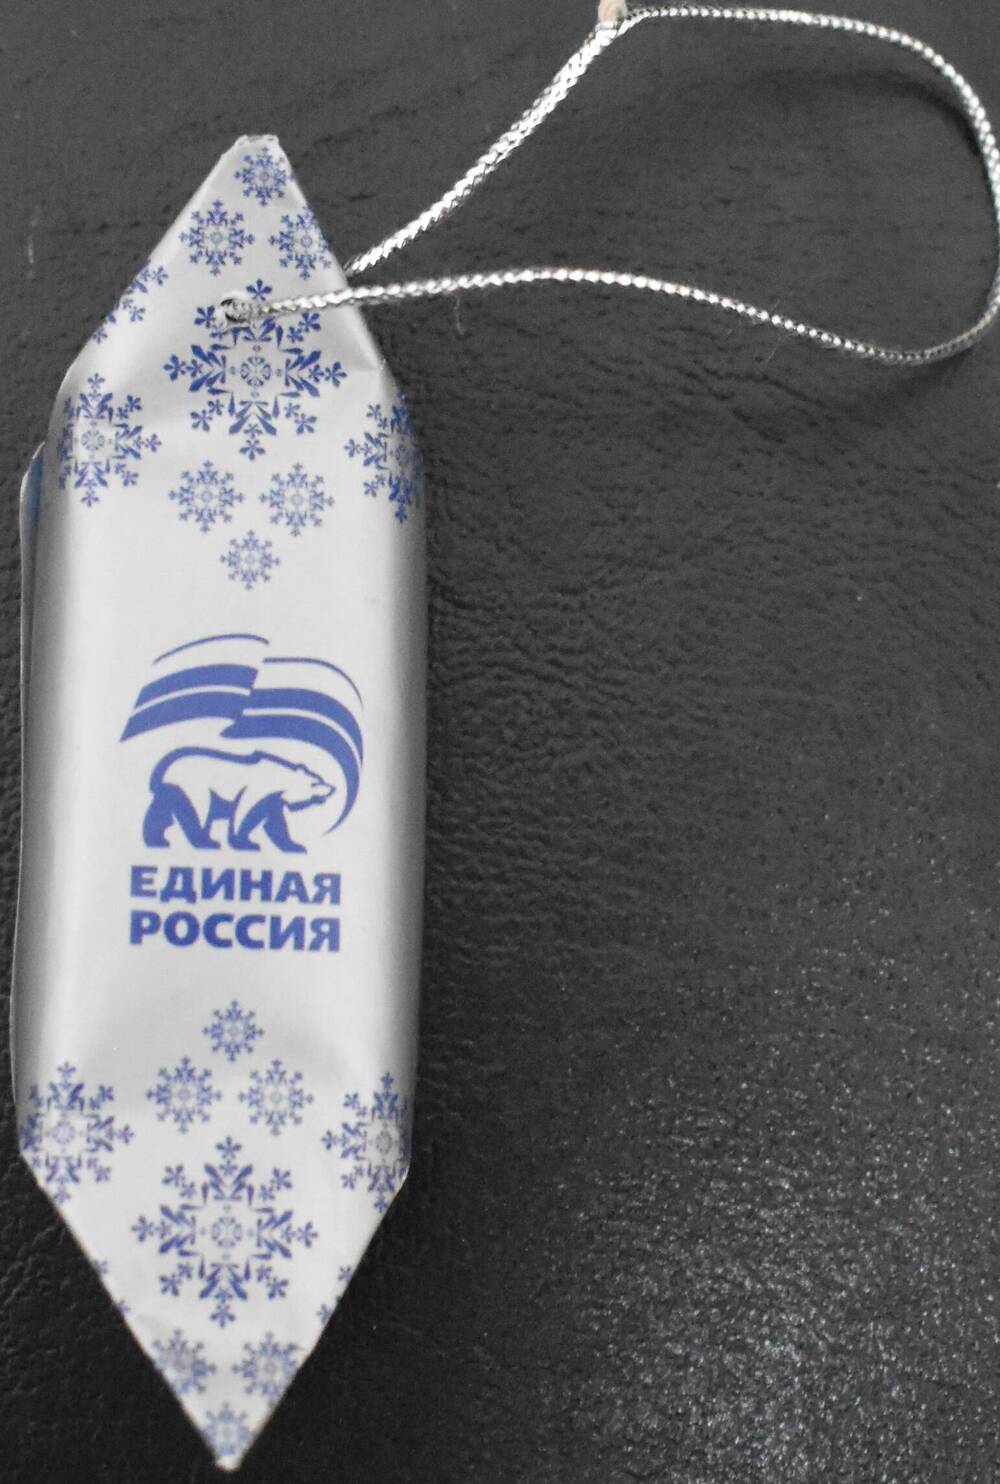 Фантик от конфеты
из Новогоднего подарочного набора 
с логотипом «Единая Россия»